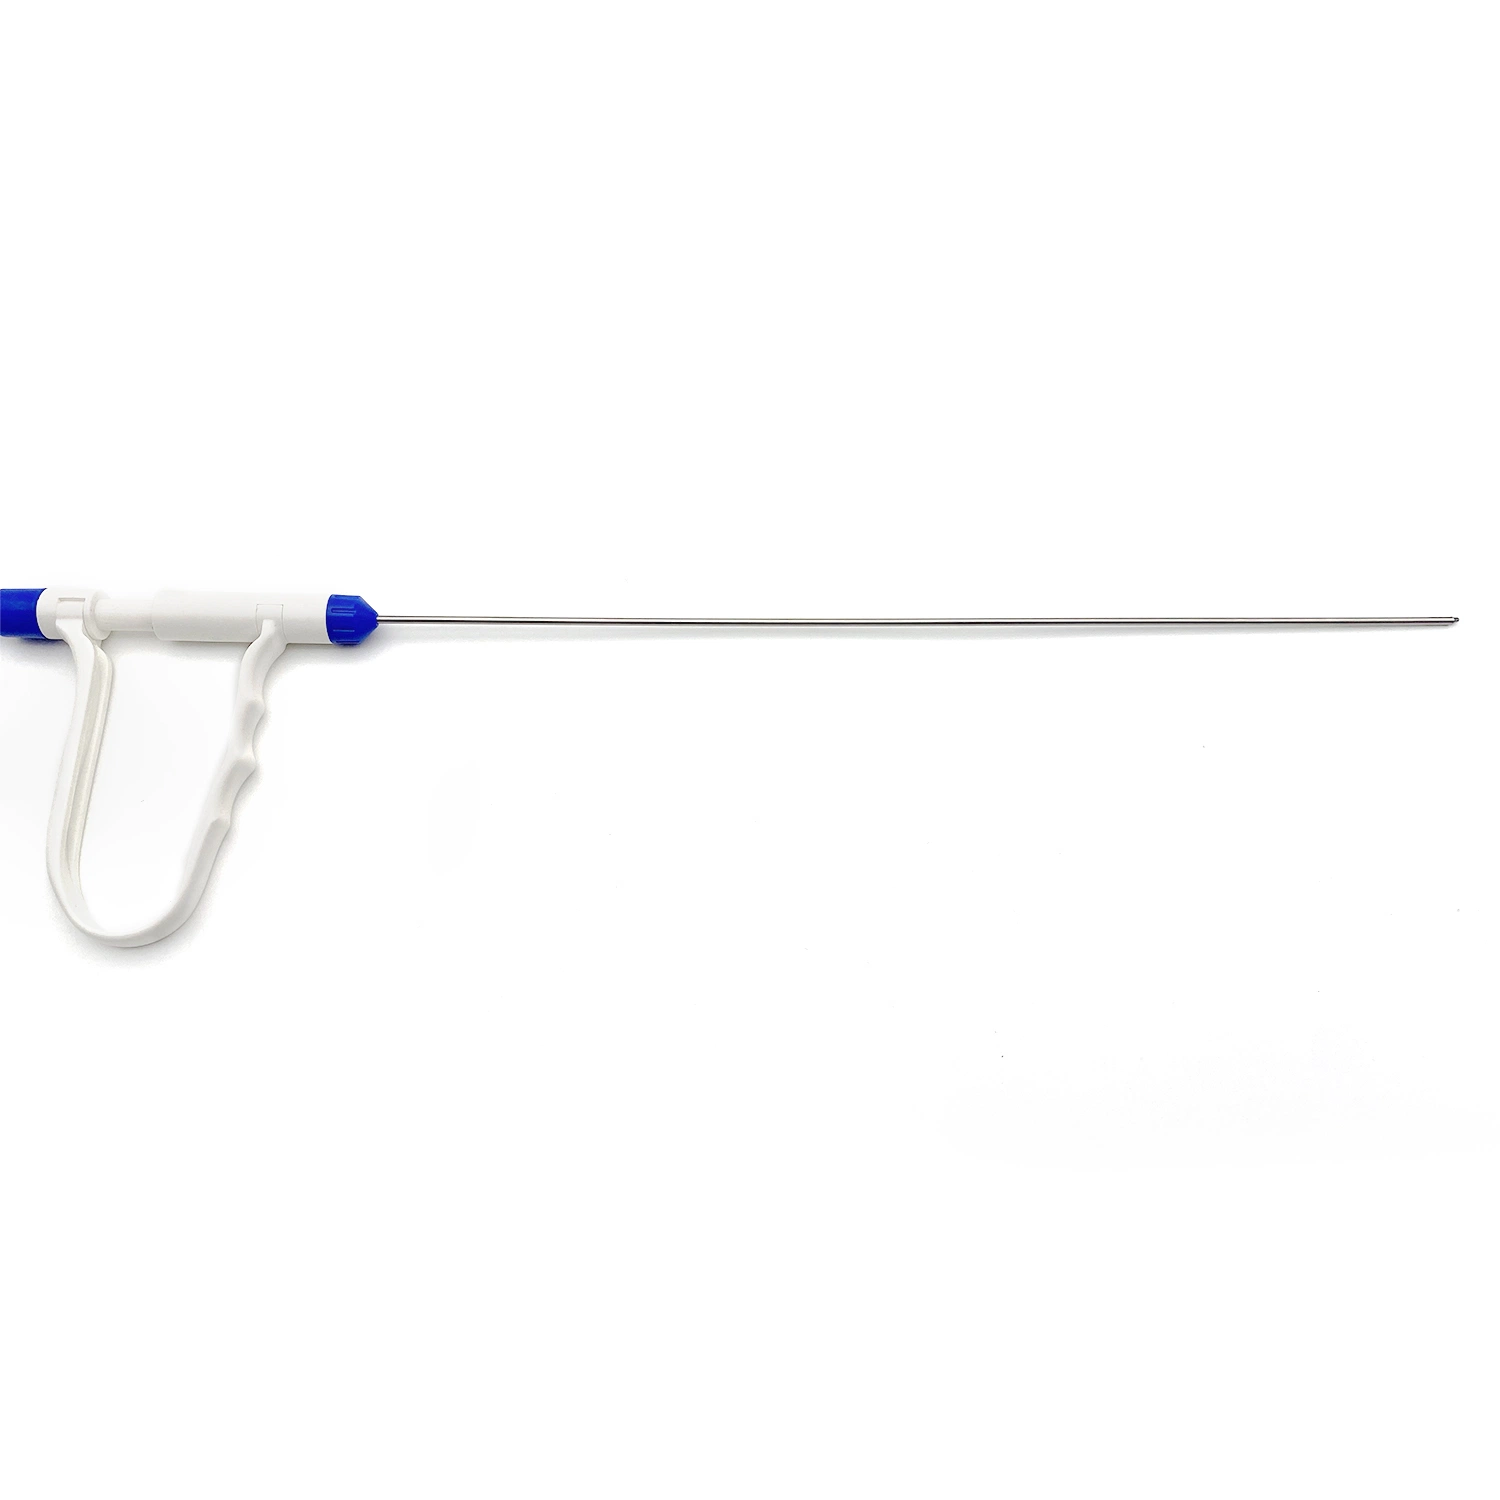 Радиочастотные биполярные электроды для эндоскопической хирургии позвоночника (Коагуляция и абляция)